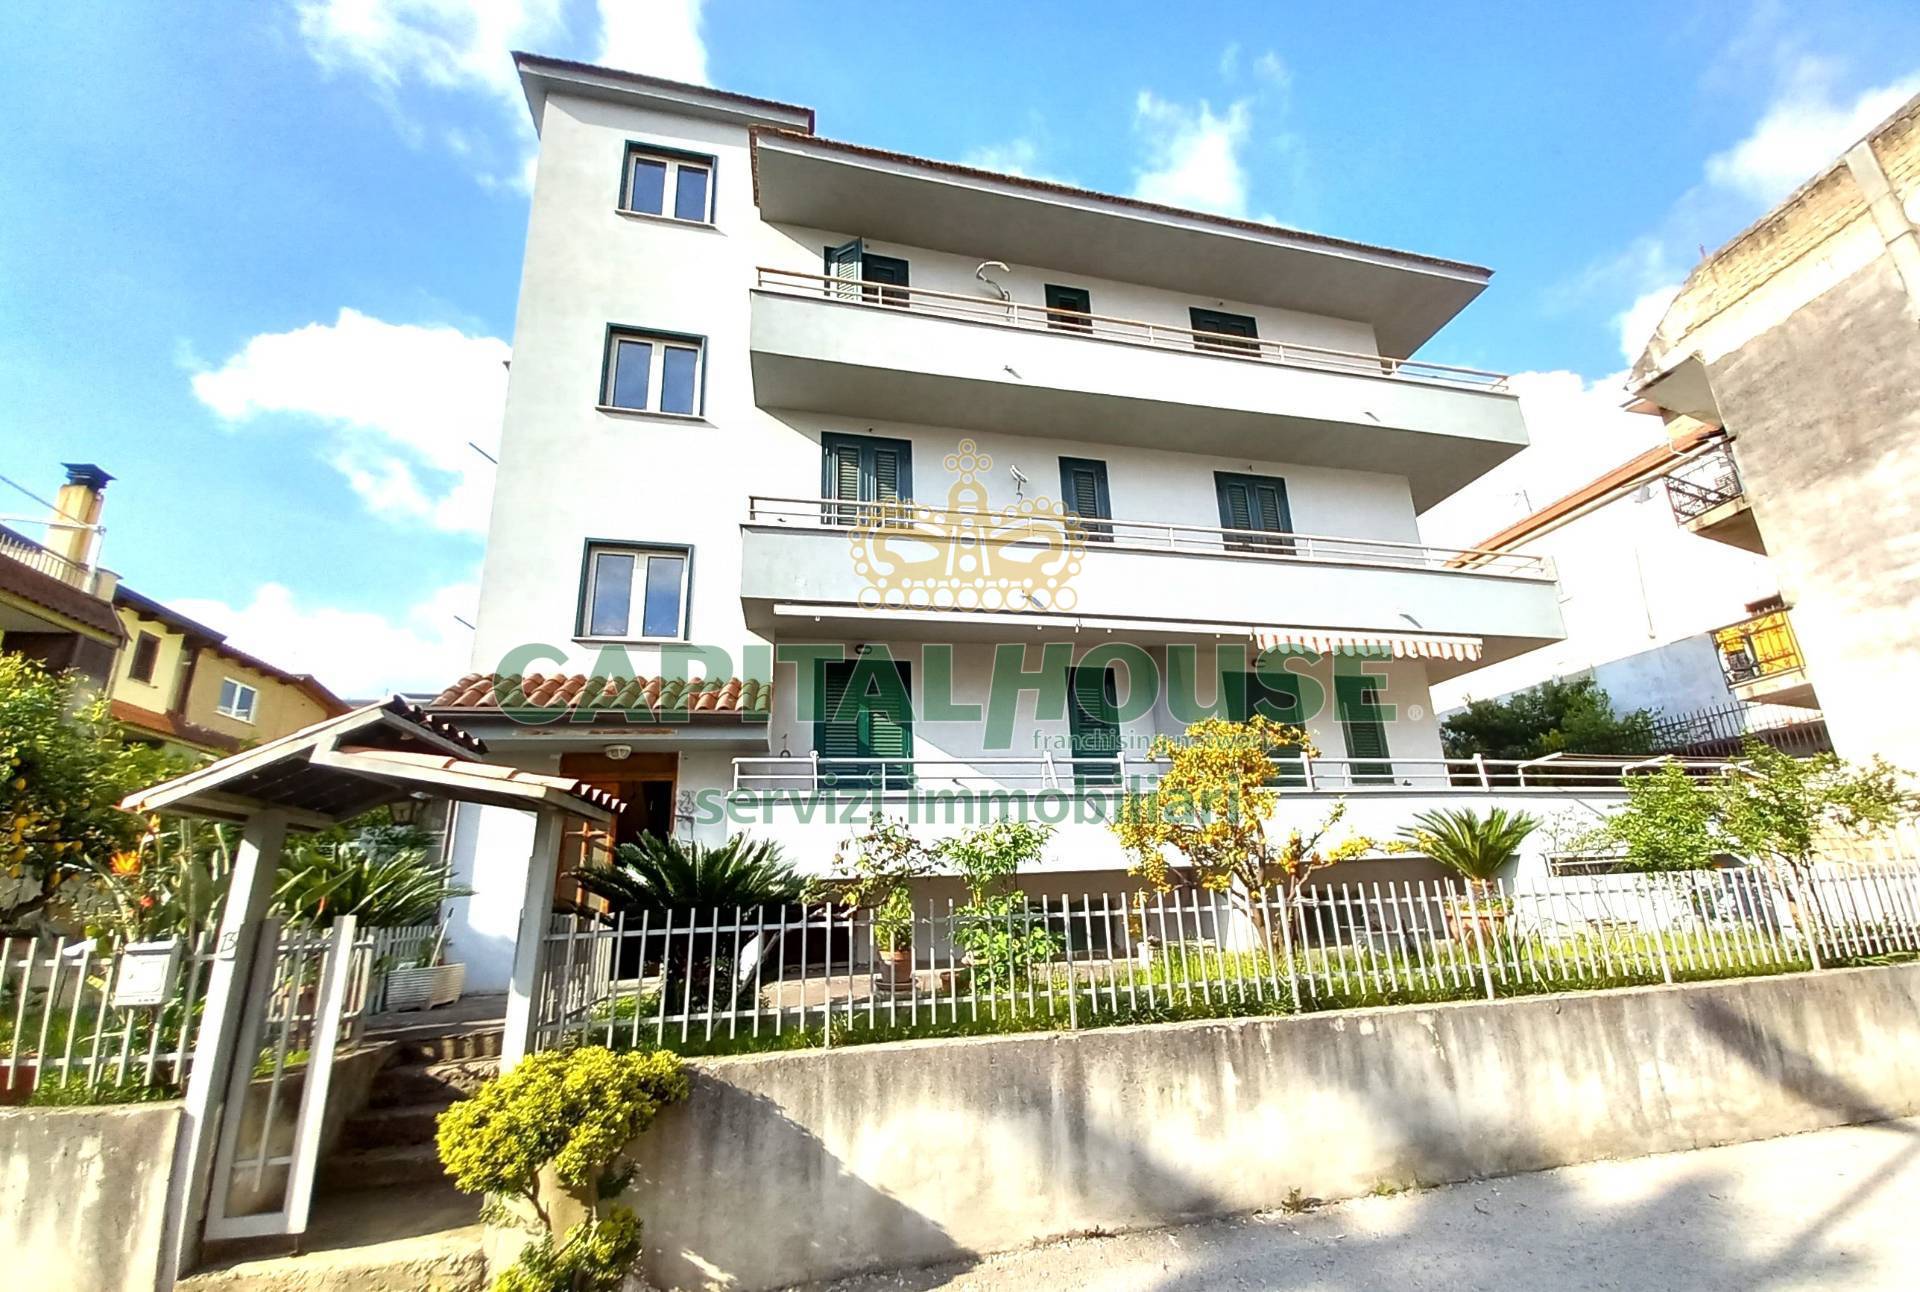 Appartamento in vendita a Sirignano, 3 locali, prezzo € 150.000 | PortaleAgenzieImmobiliari.it